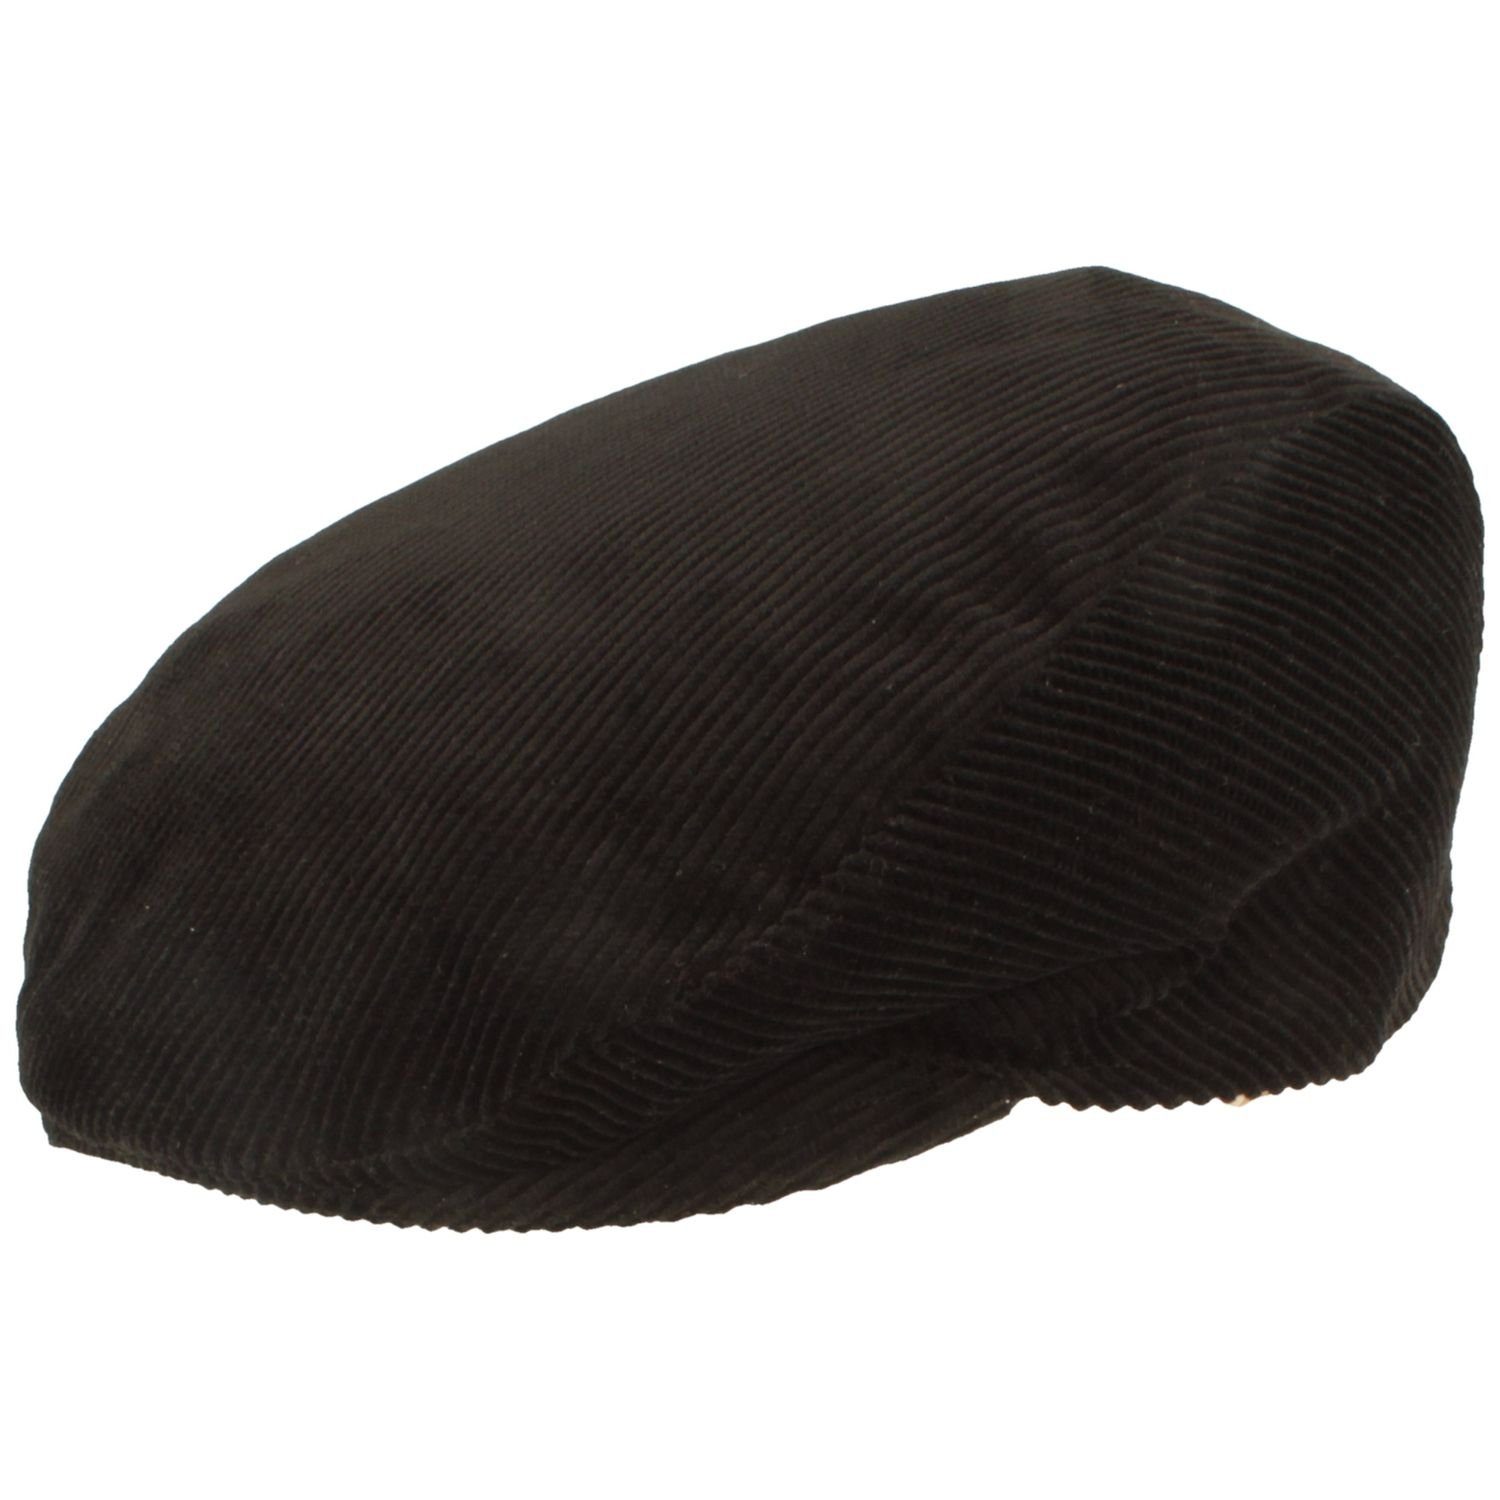 Breiter Schiebermütze Flatcap aus Baumwolle mit Cord-Streifen